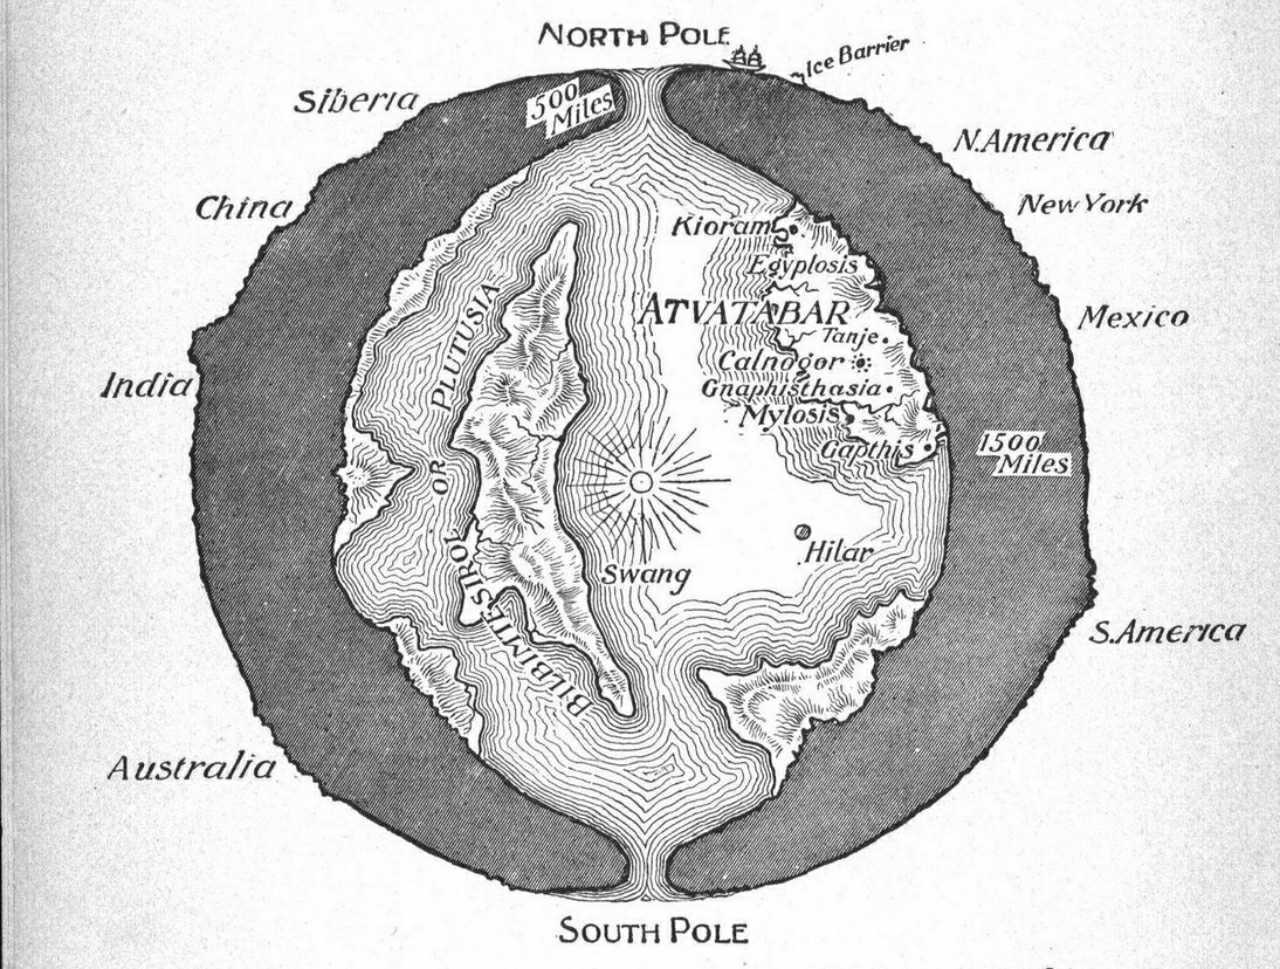 Průřez planety Země zobrazující „vnitřní svět“ Atvatabaru z románu sci-fi Williama R. Bradshawa z roku 1892 Bohyně Atvatabar